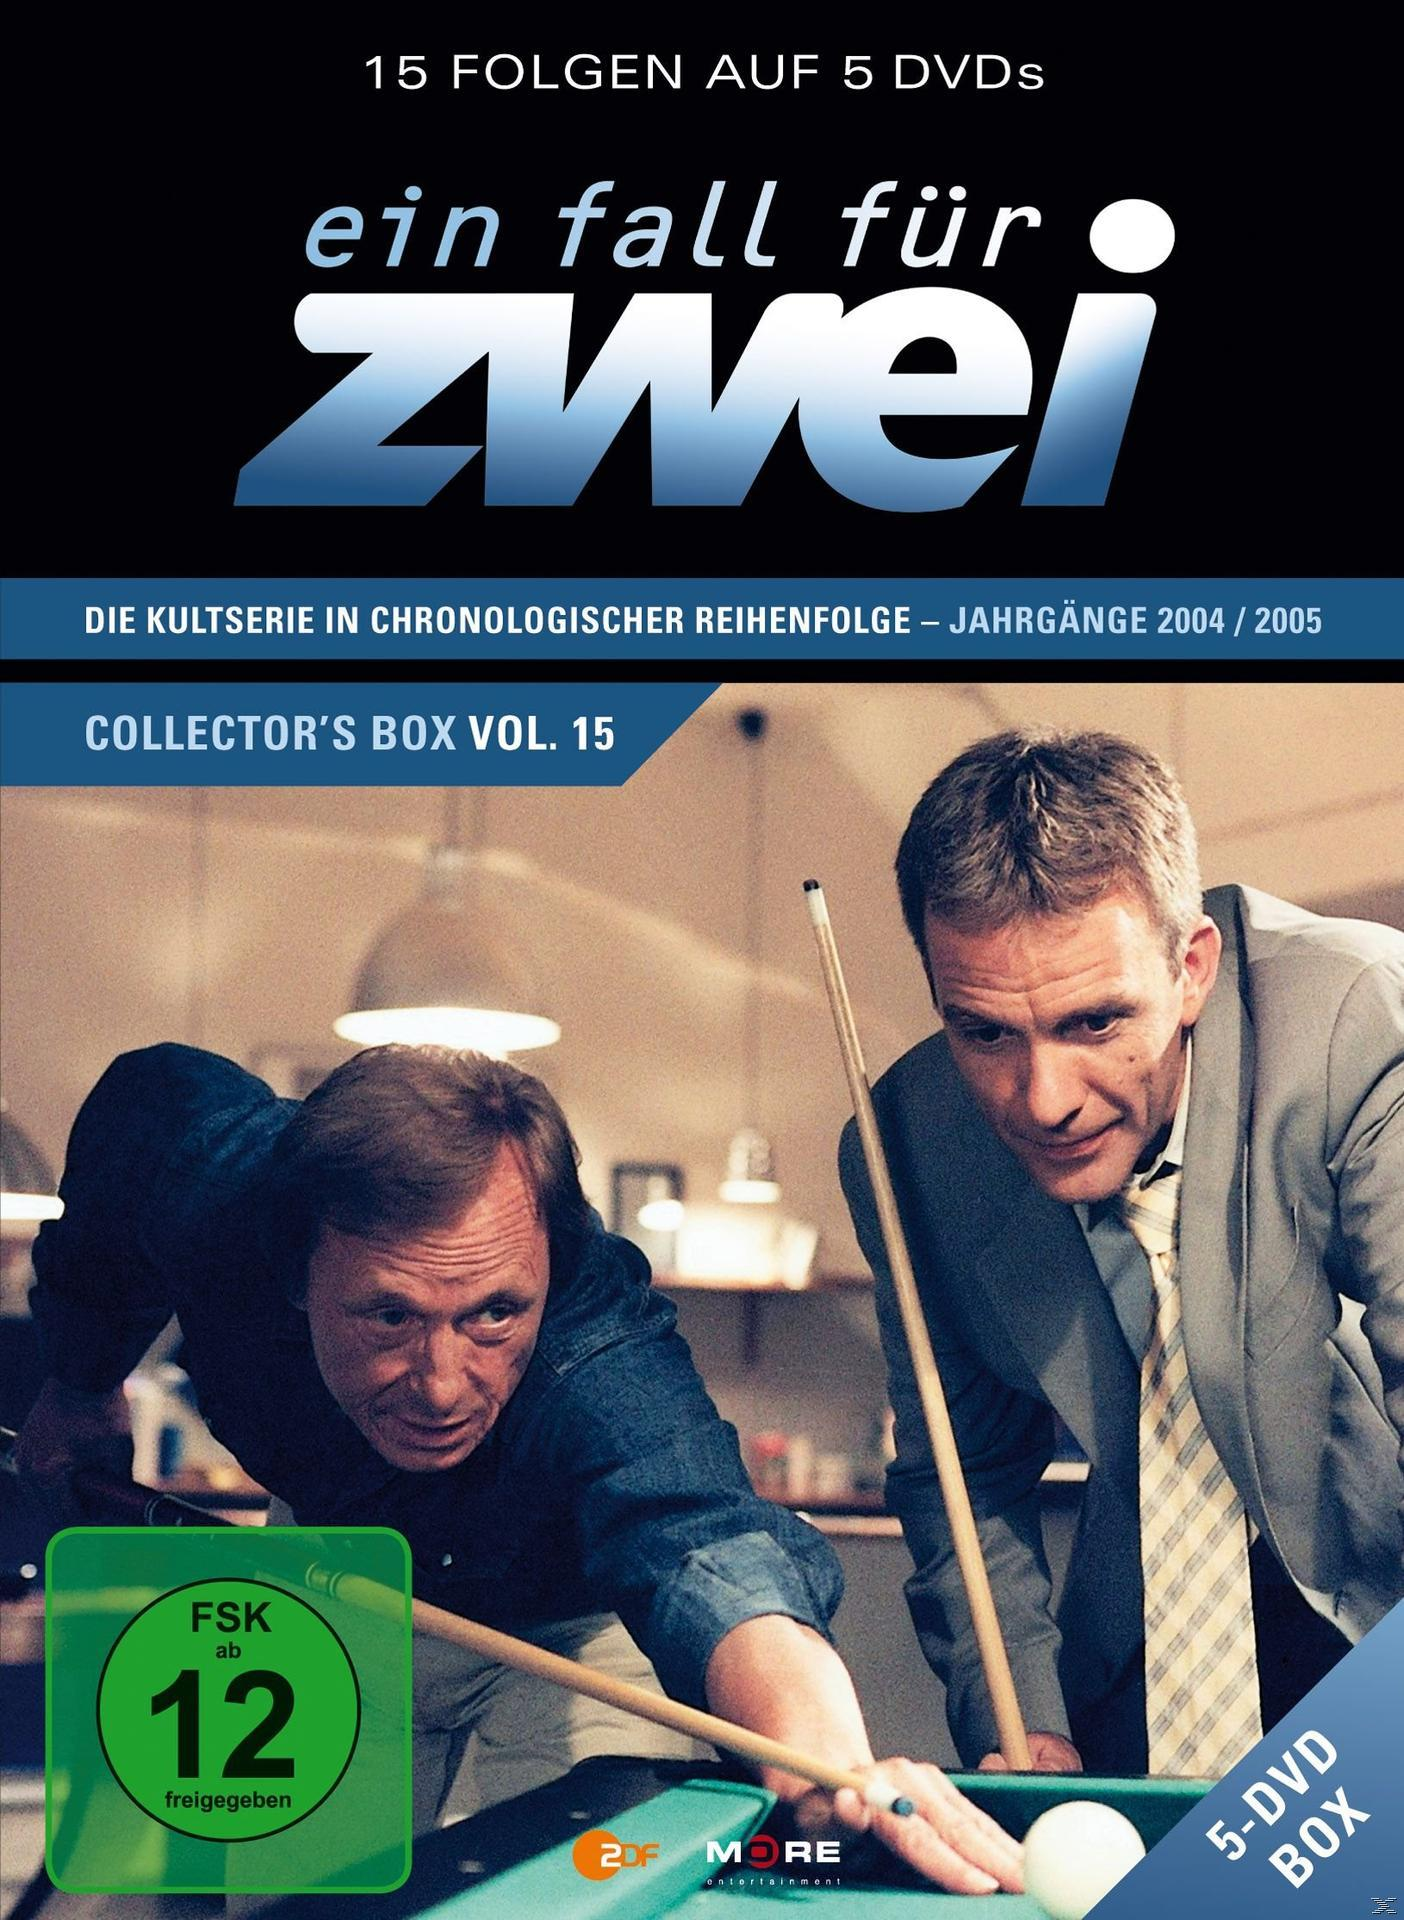 Zwei für - DVD Box Collector\'s Ein (210-224) 15 Fall